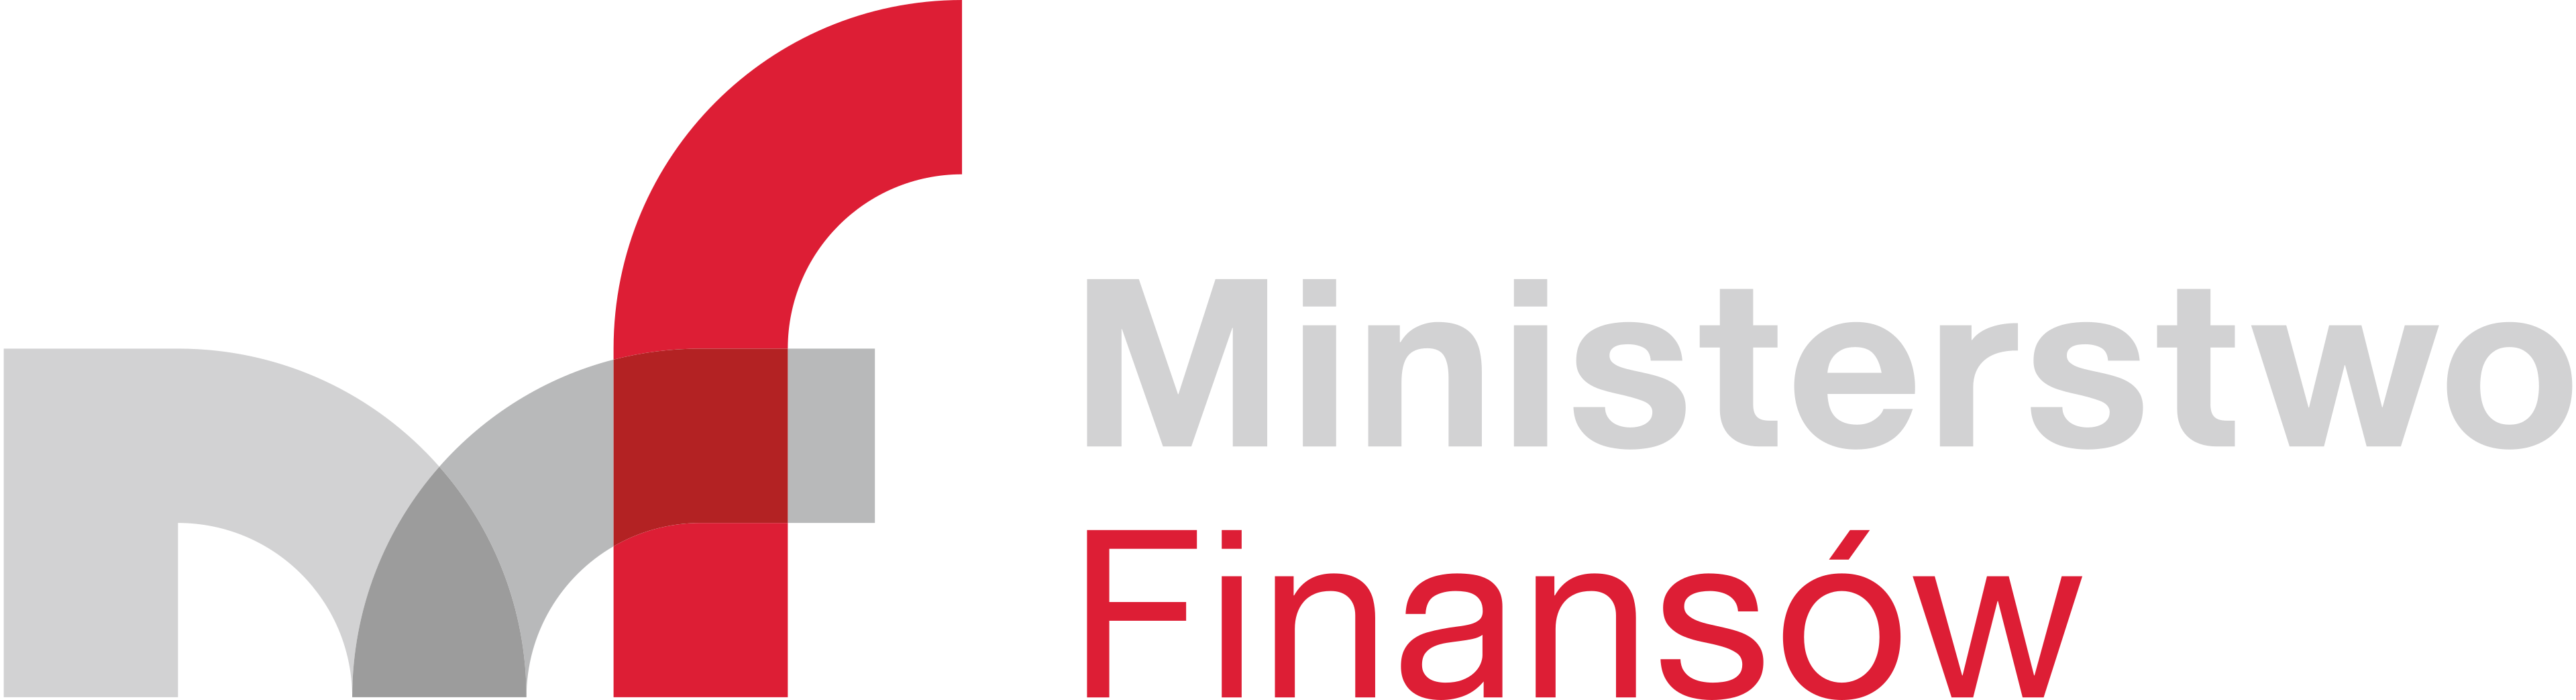 Logo Ministerstwo Finansów svgRGBpoziom 190226 OK